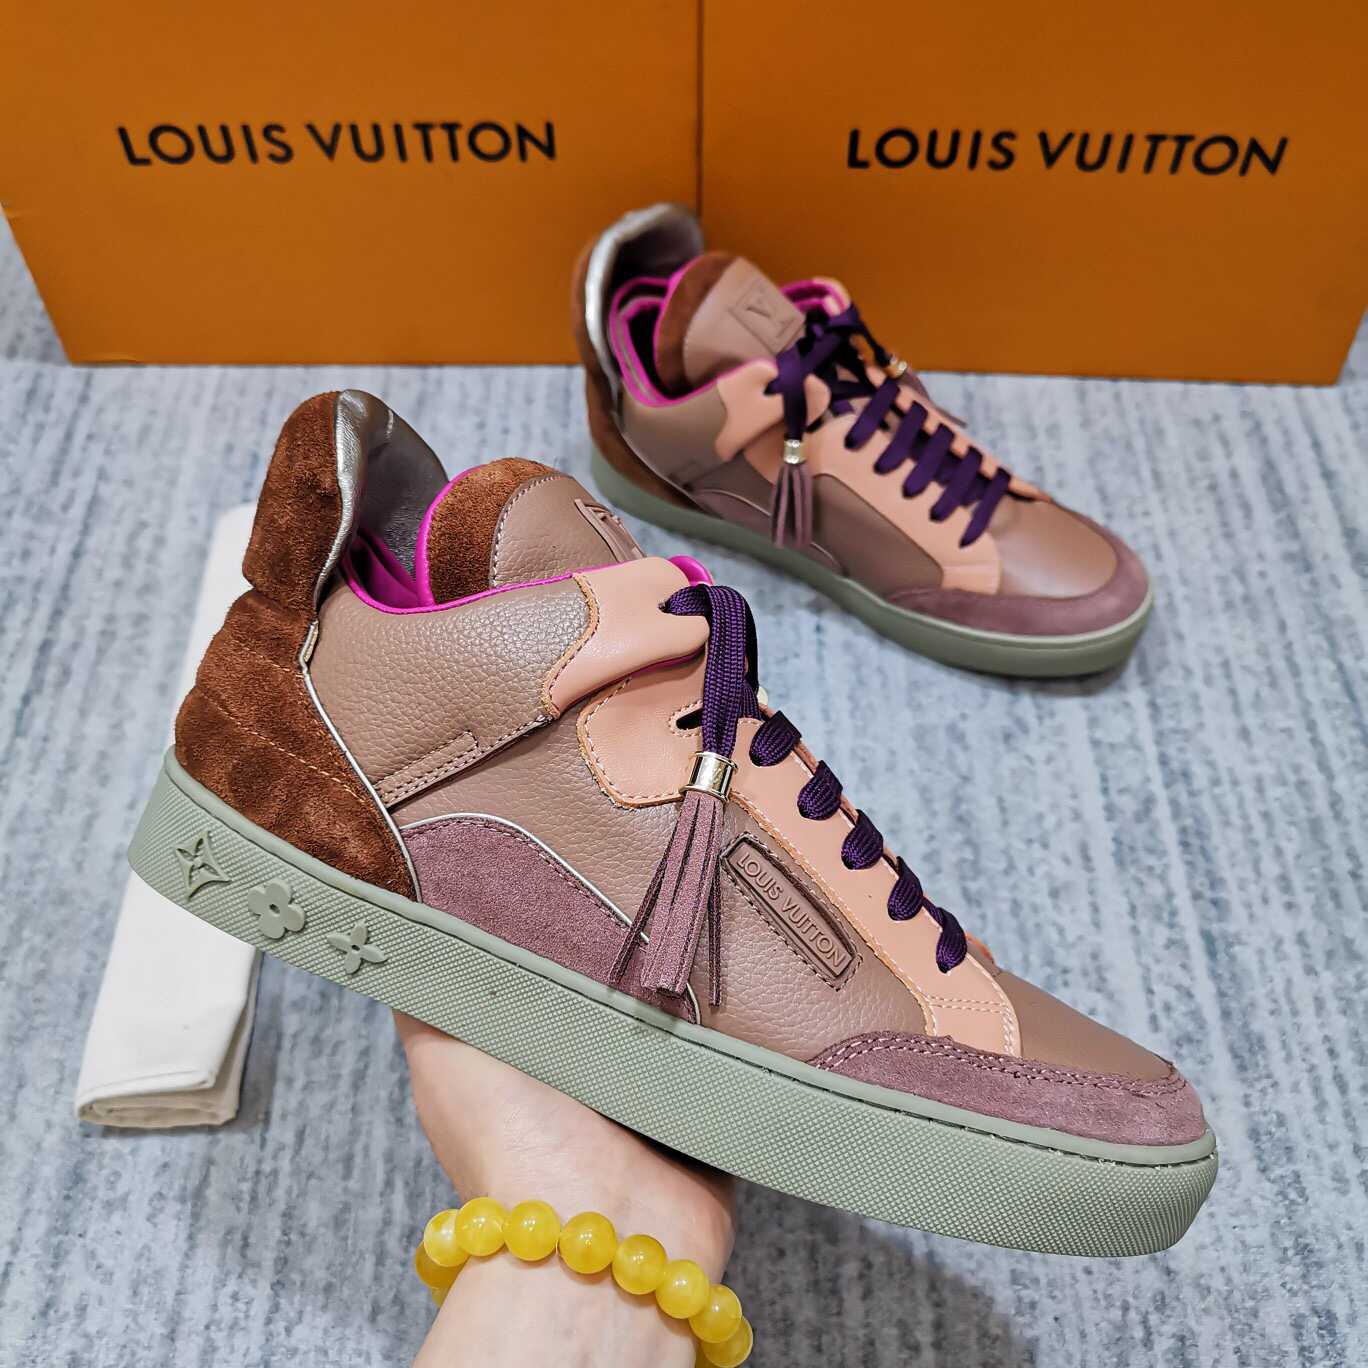 原版LV男士运动鞋 Kanye West x Louis Vuittion Don Patchwork联名款运动鞋 LV男士运动鞋 